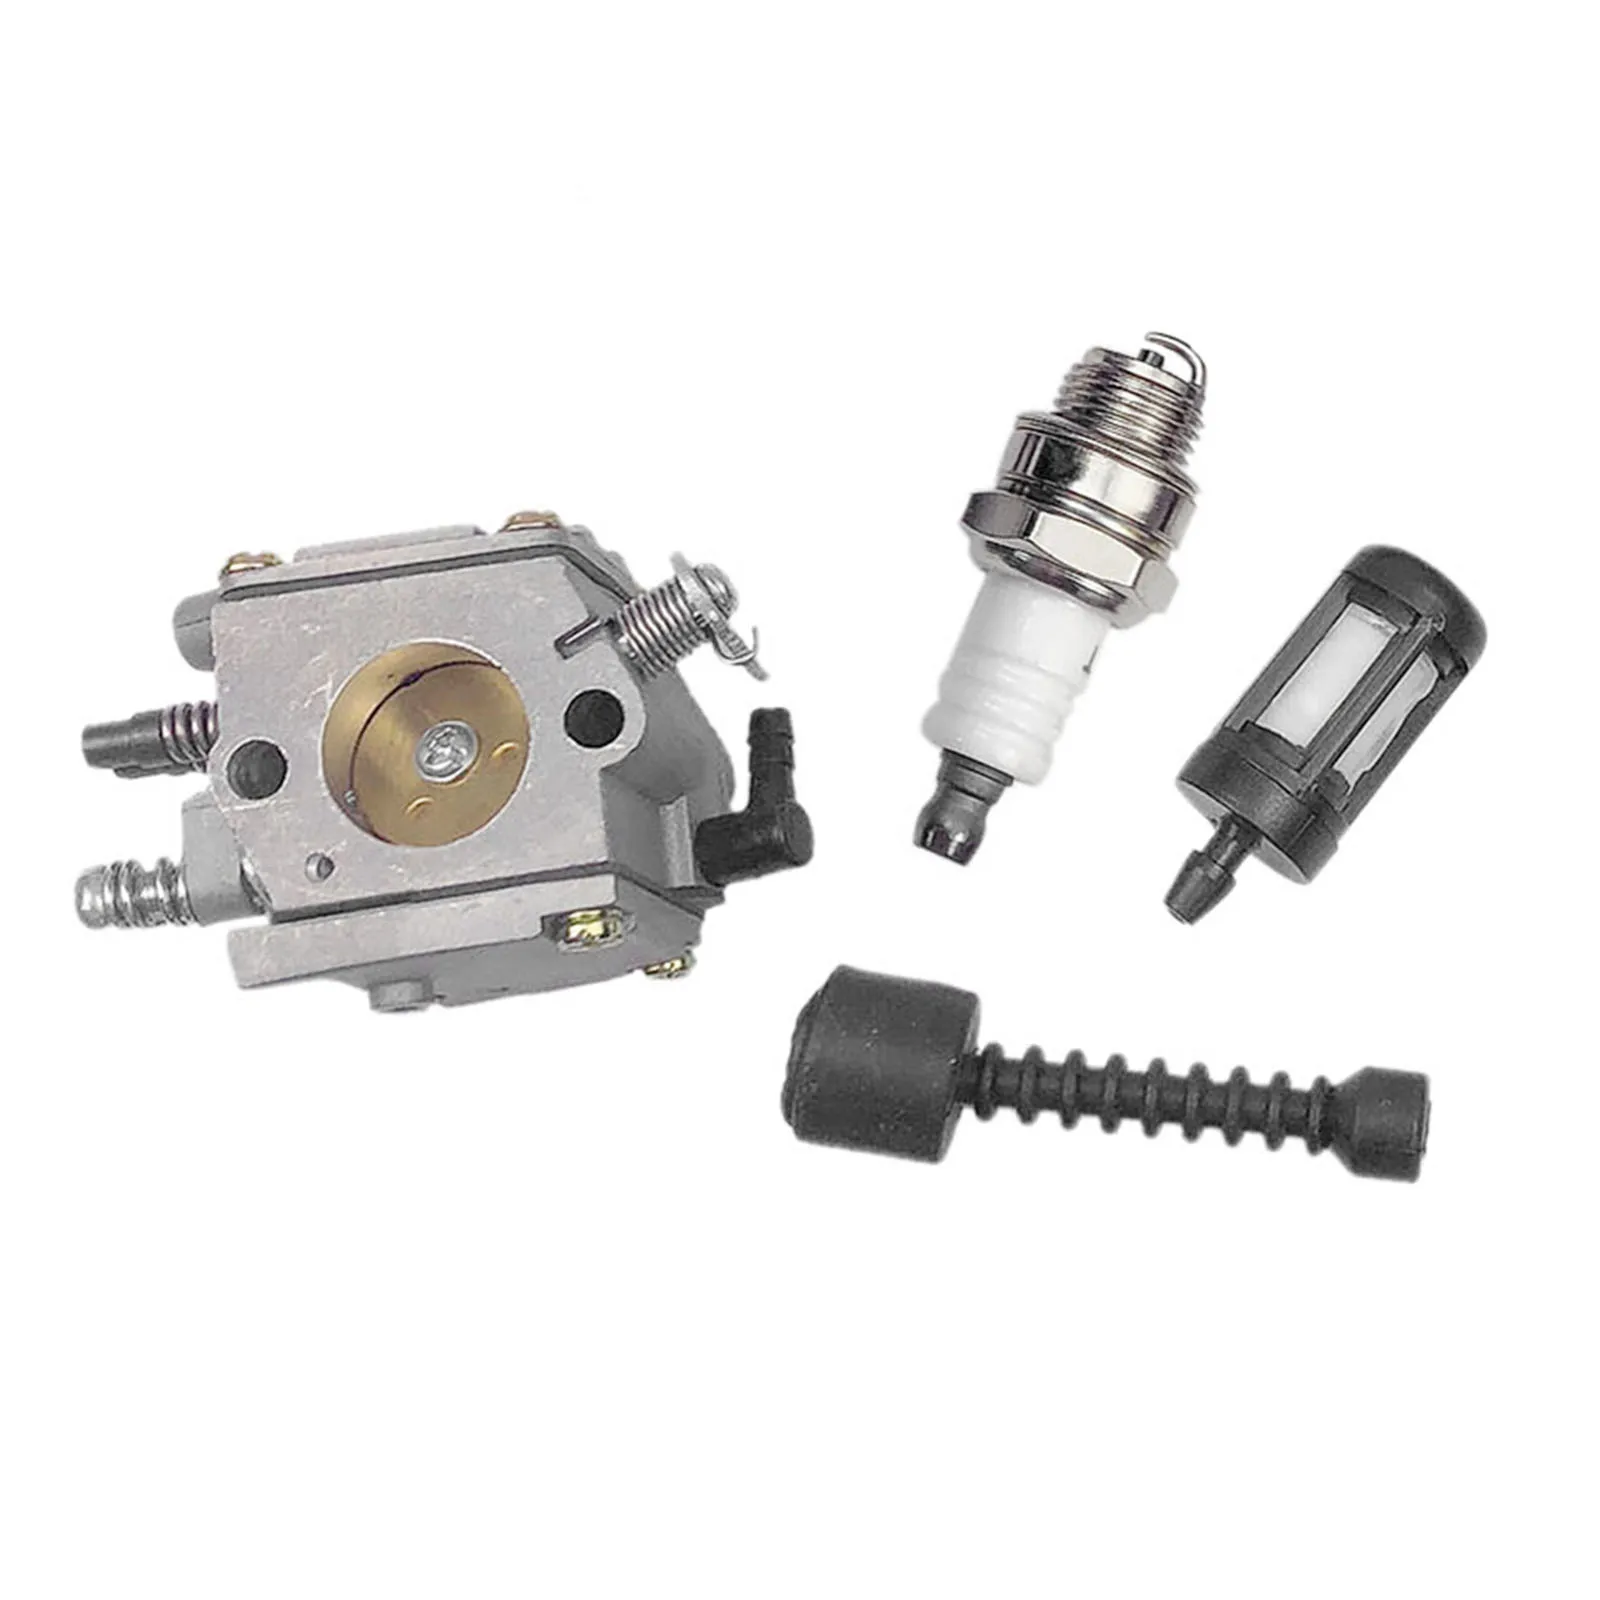 New Carburetor Ignition Coil & Fuel Line /Filter Spark Plug For STIHL Chain Saw 038 MS380 MS381 038 AV SUPER MAGNUM